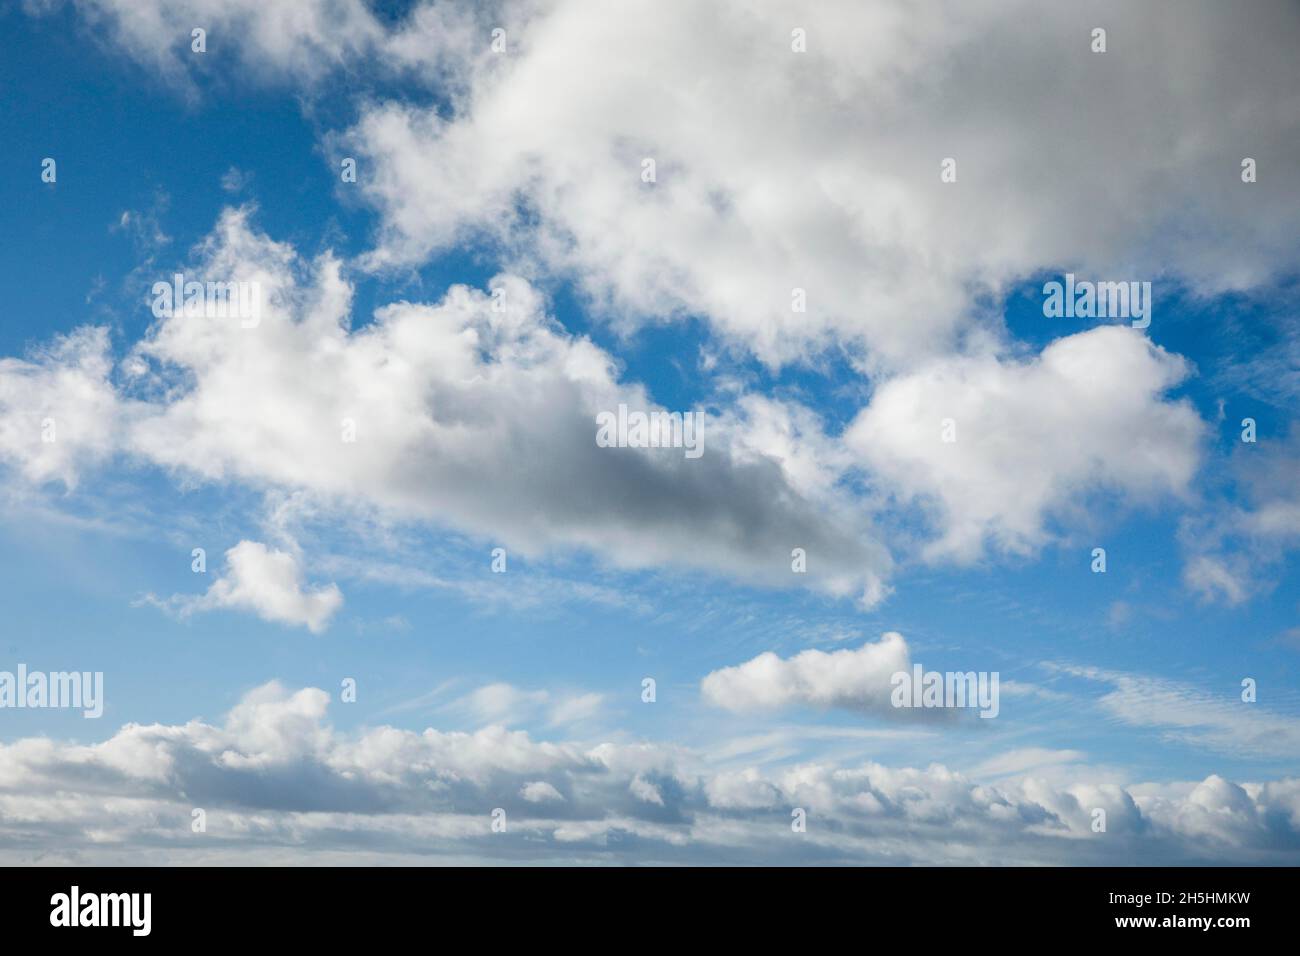 Pecora. Il velo e le nuvole (cumuli) adornano il cielo blu in forti venti Foto Stock